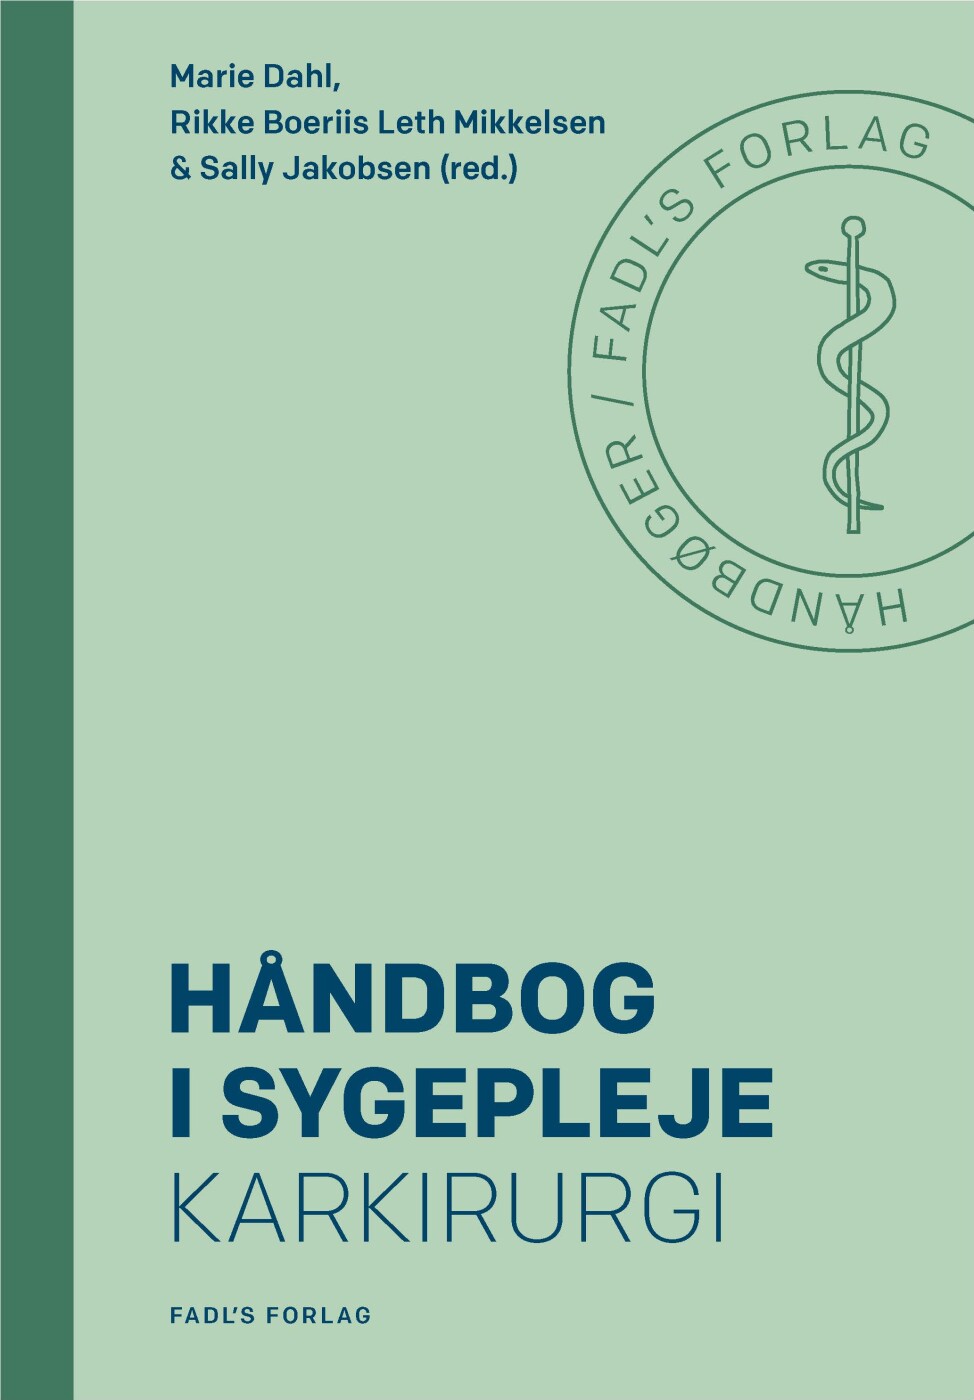 Håndbog I Sygepleje: Karkirurgi - Marie Dahl - Bog